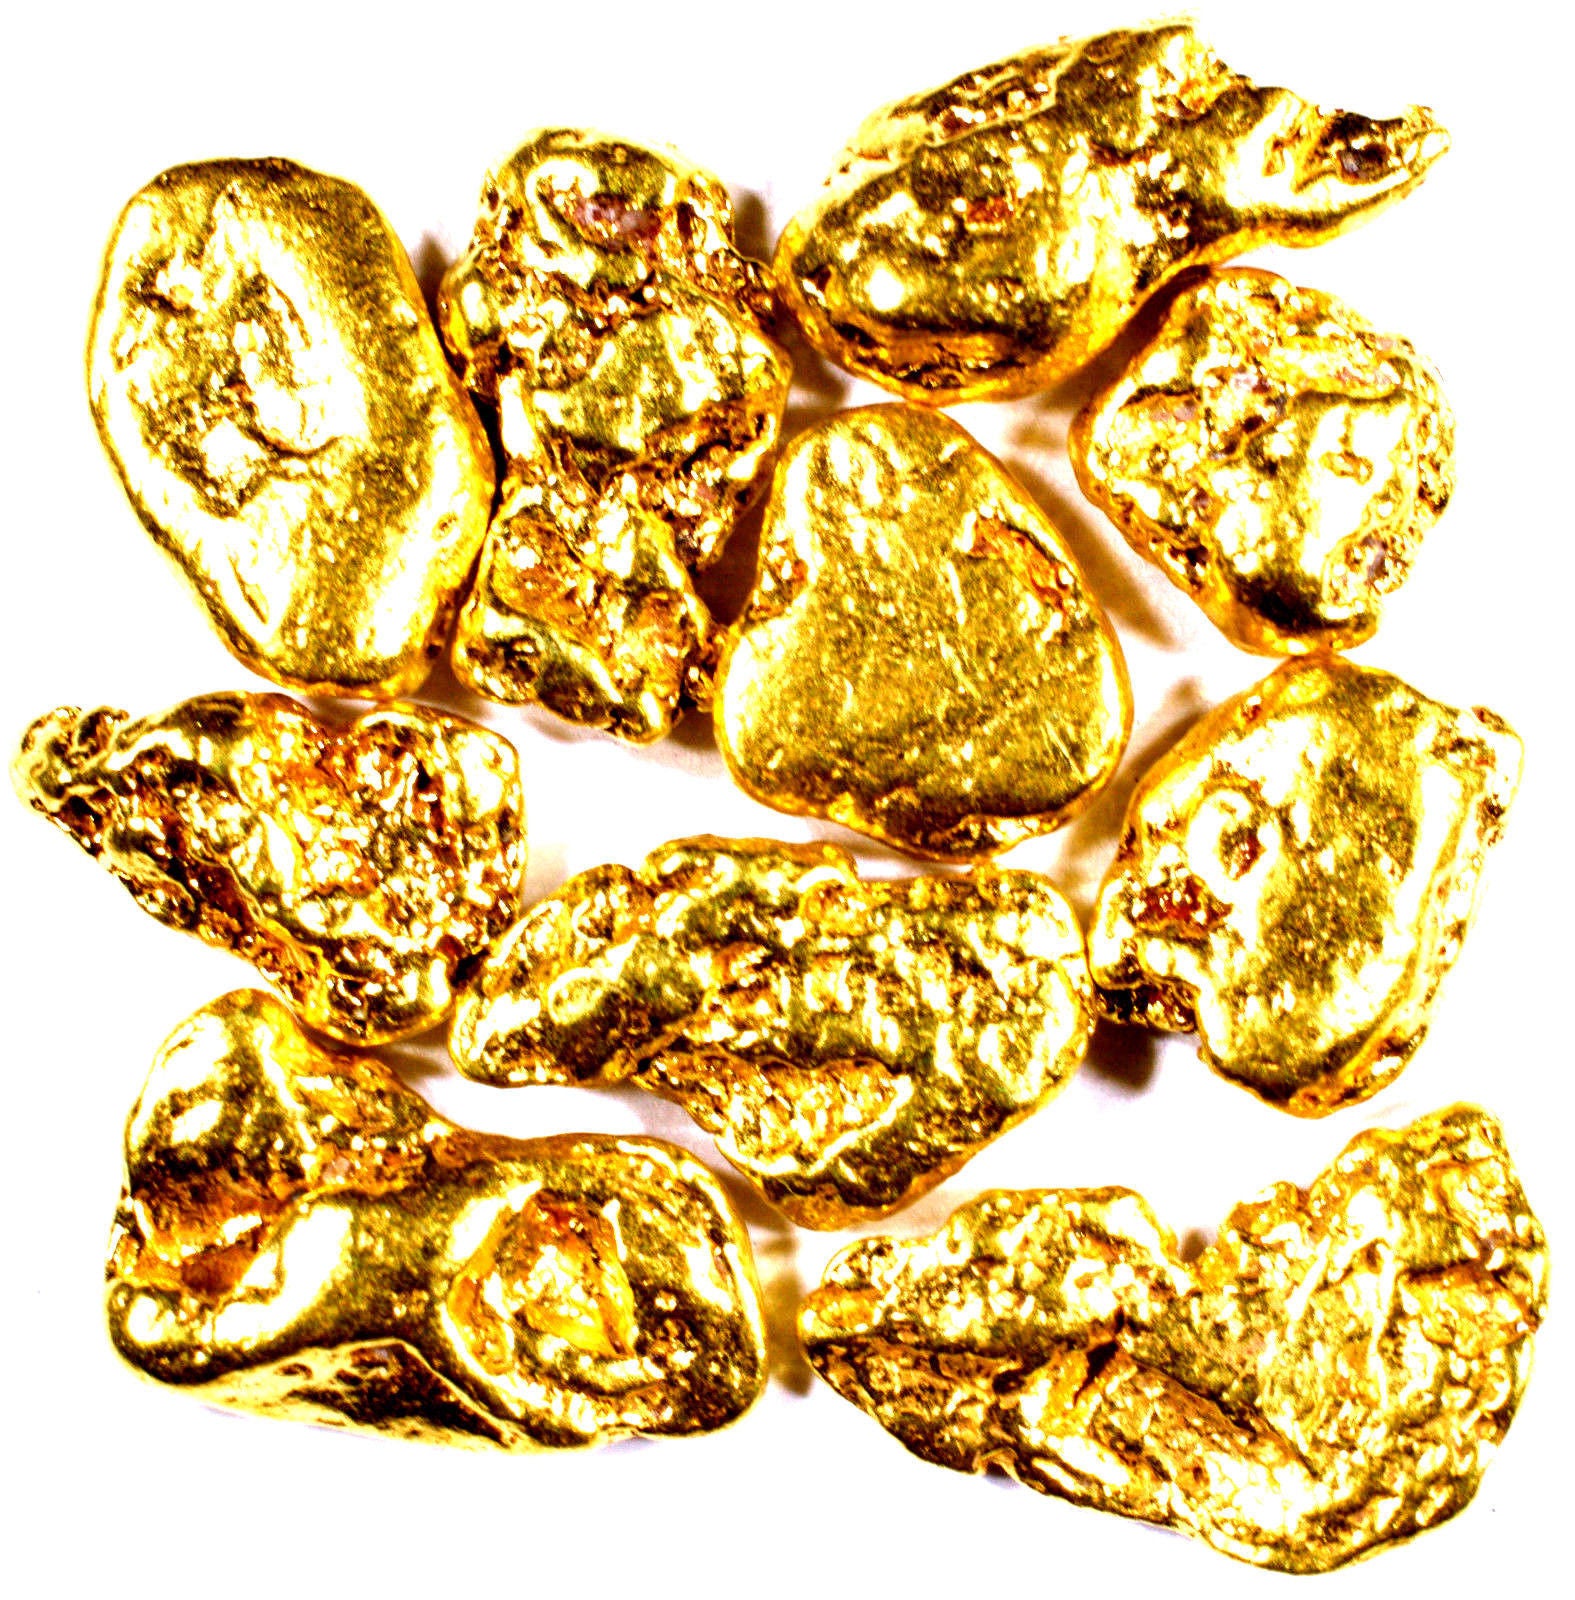 1 TROY OZ .999 SILVER MORGAN BAR BU + 10 PIECE ALASKAN PURE GOLD NUGGETS - Liquidbullion